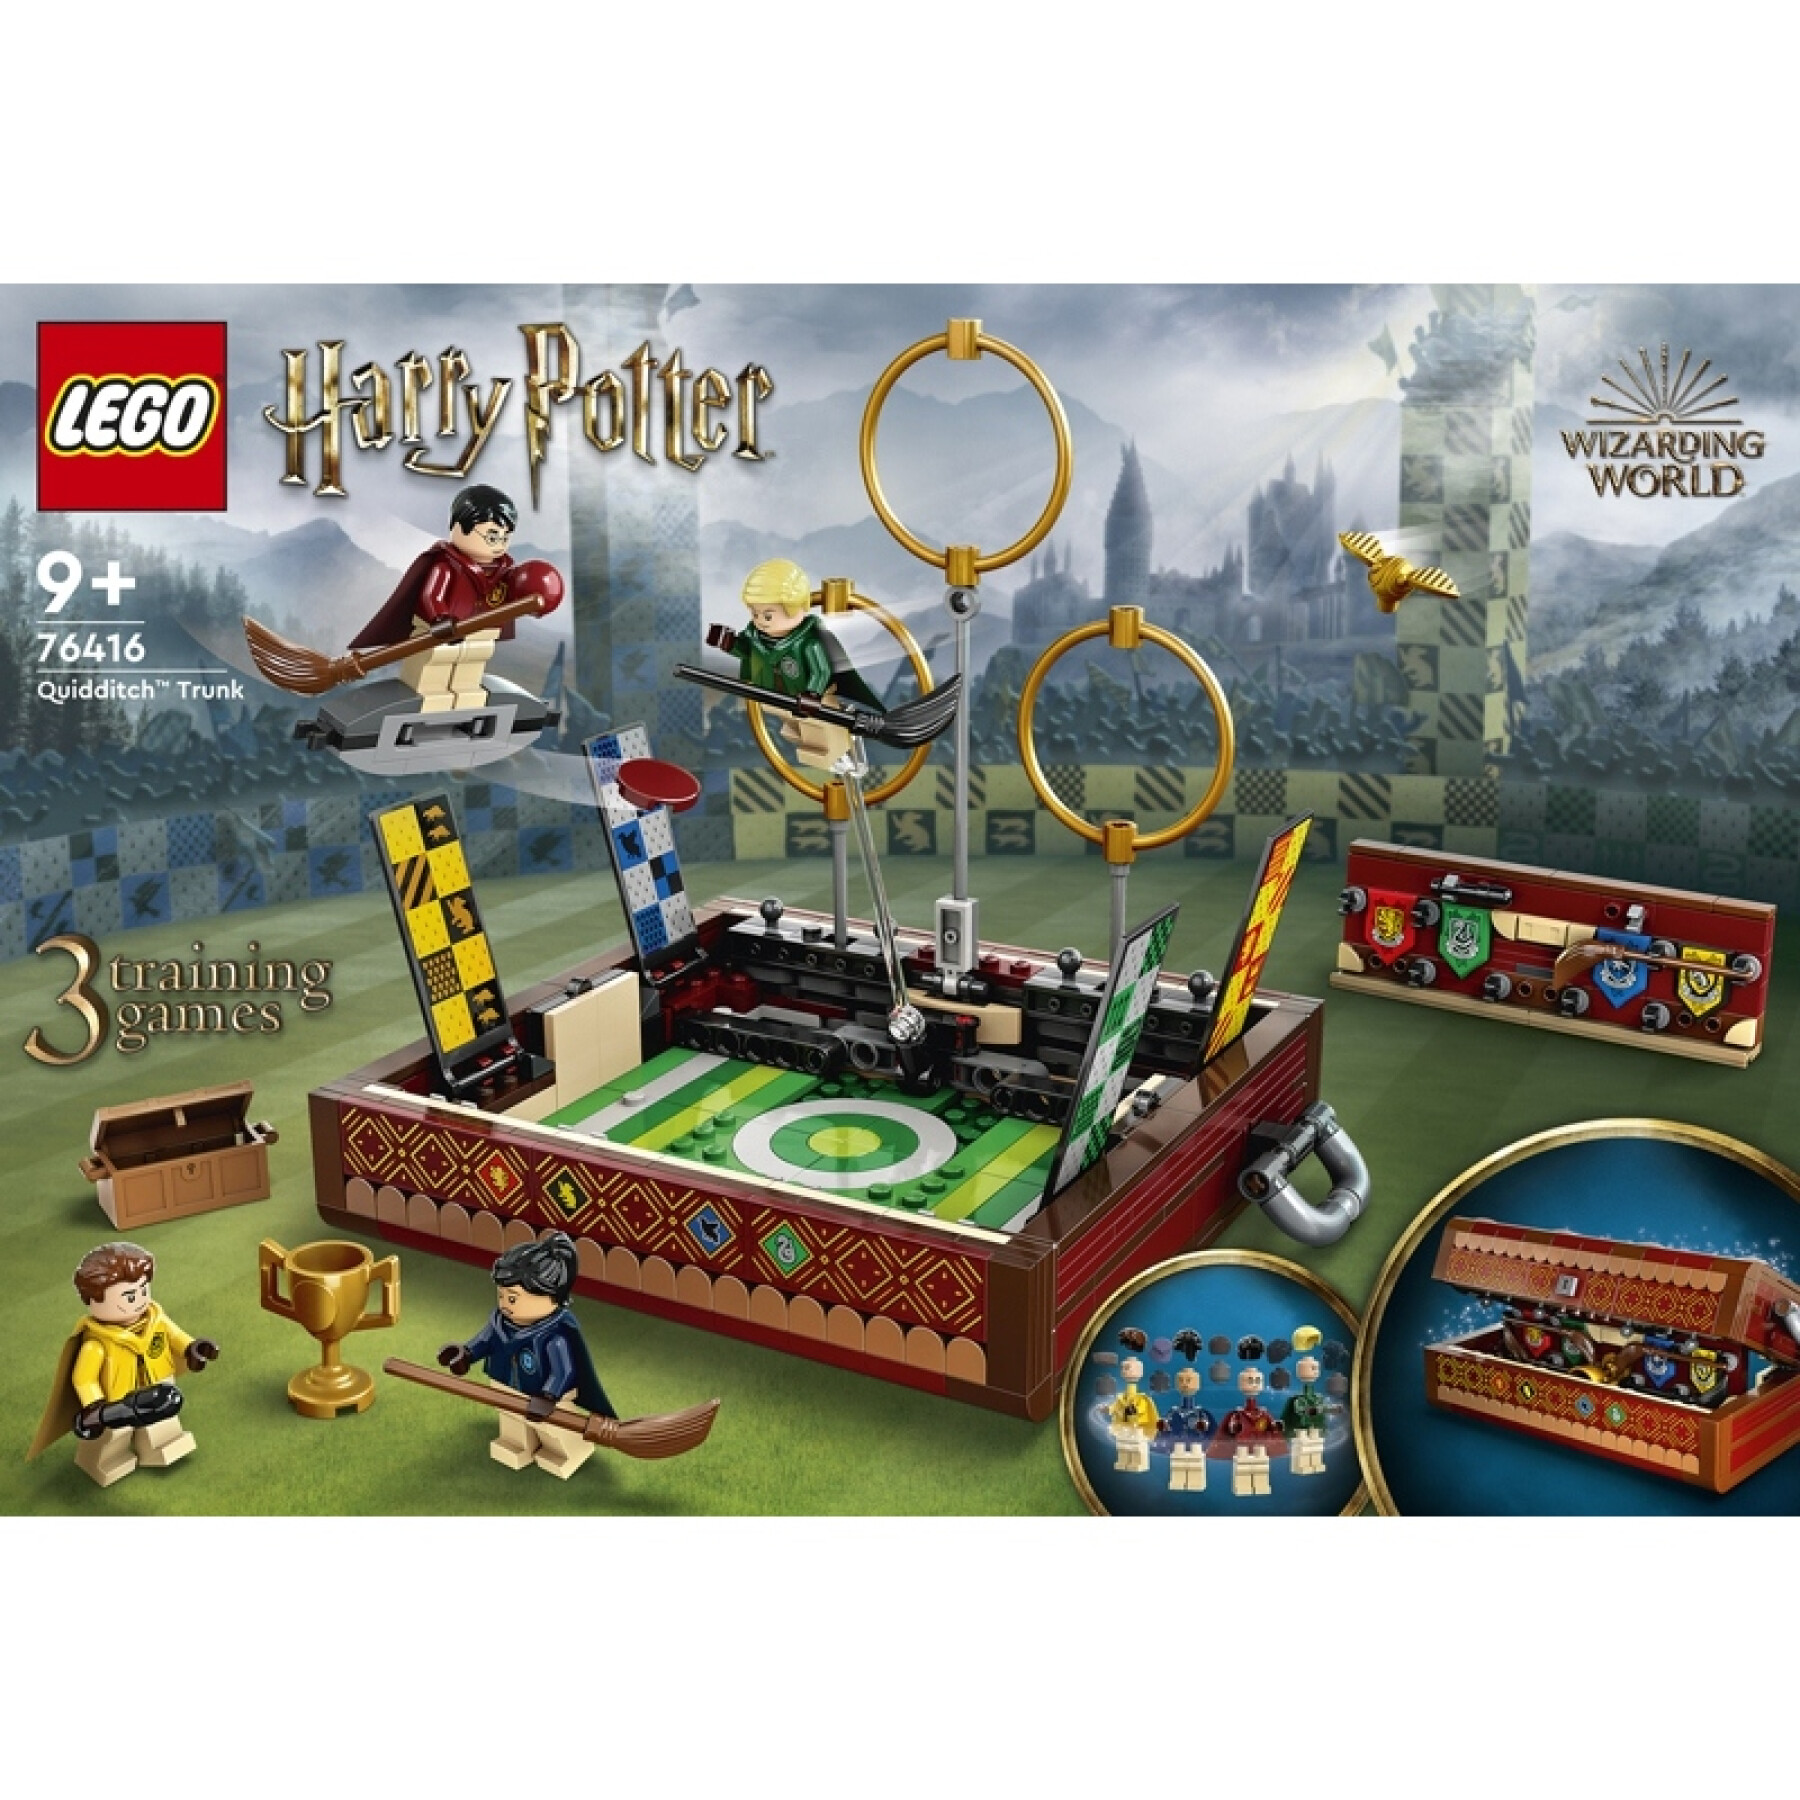 Building sets quidditch potter case Lego